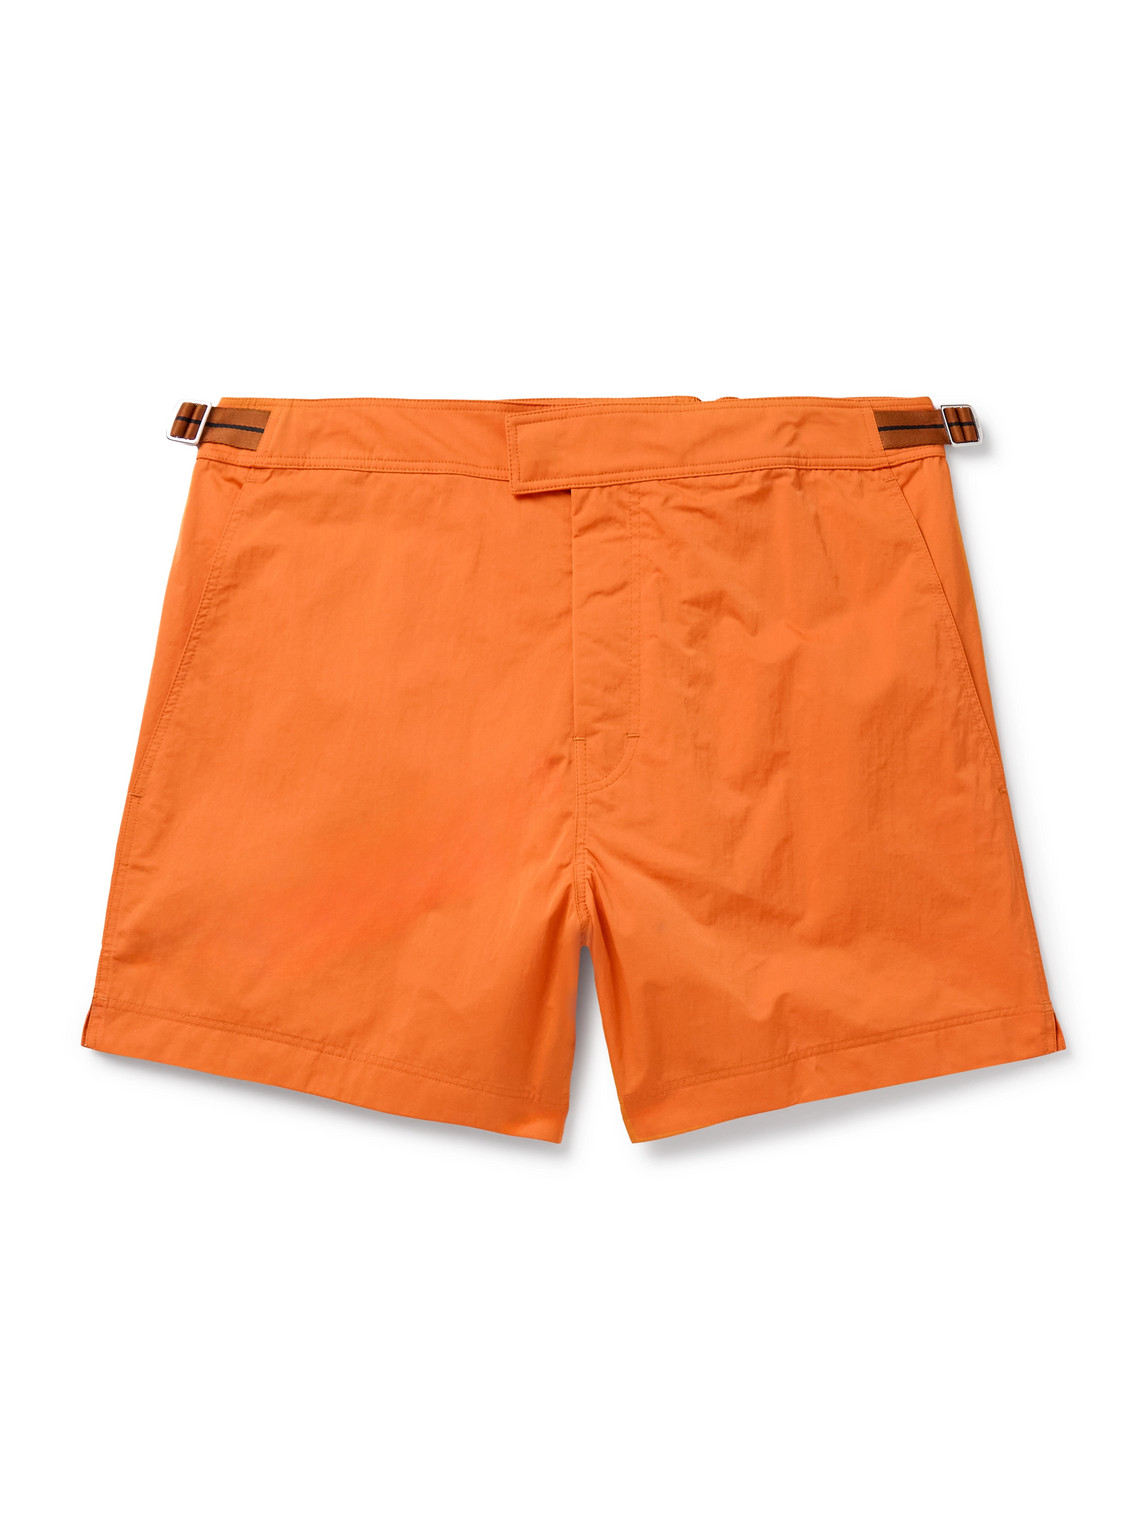 Zegna - Straight-Leg Mid-Length Swim Shorts - Men - Orange - L von Zegna